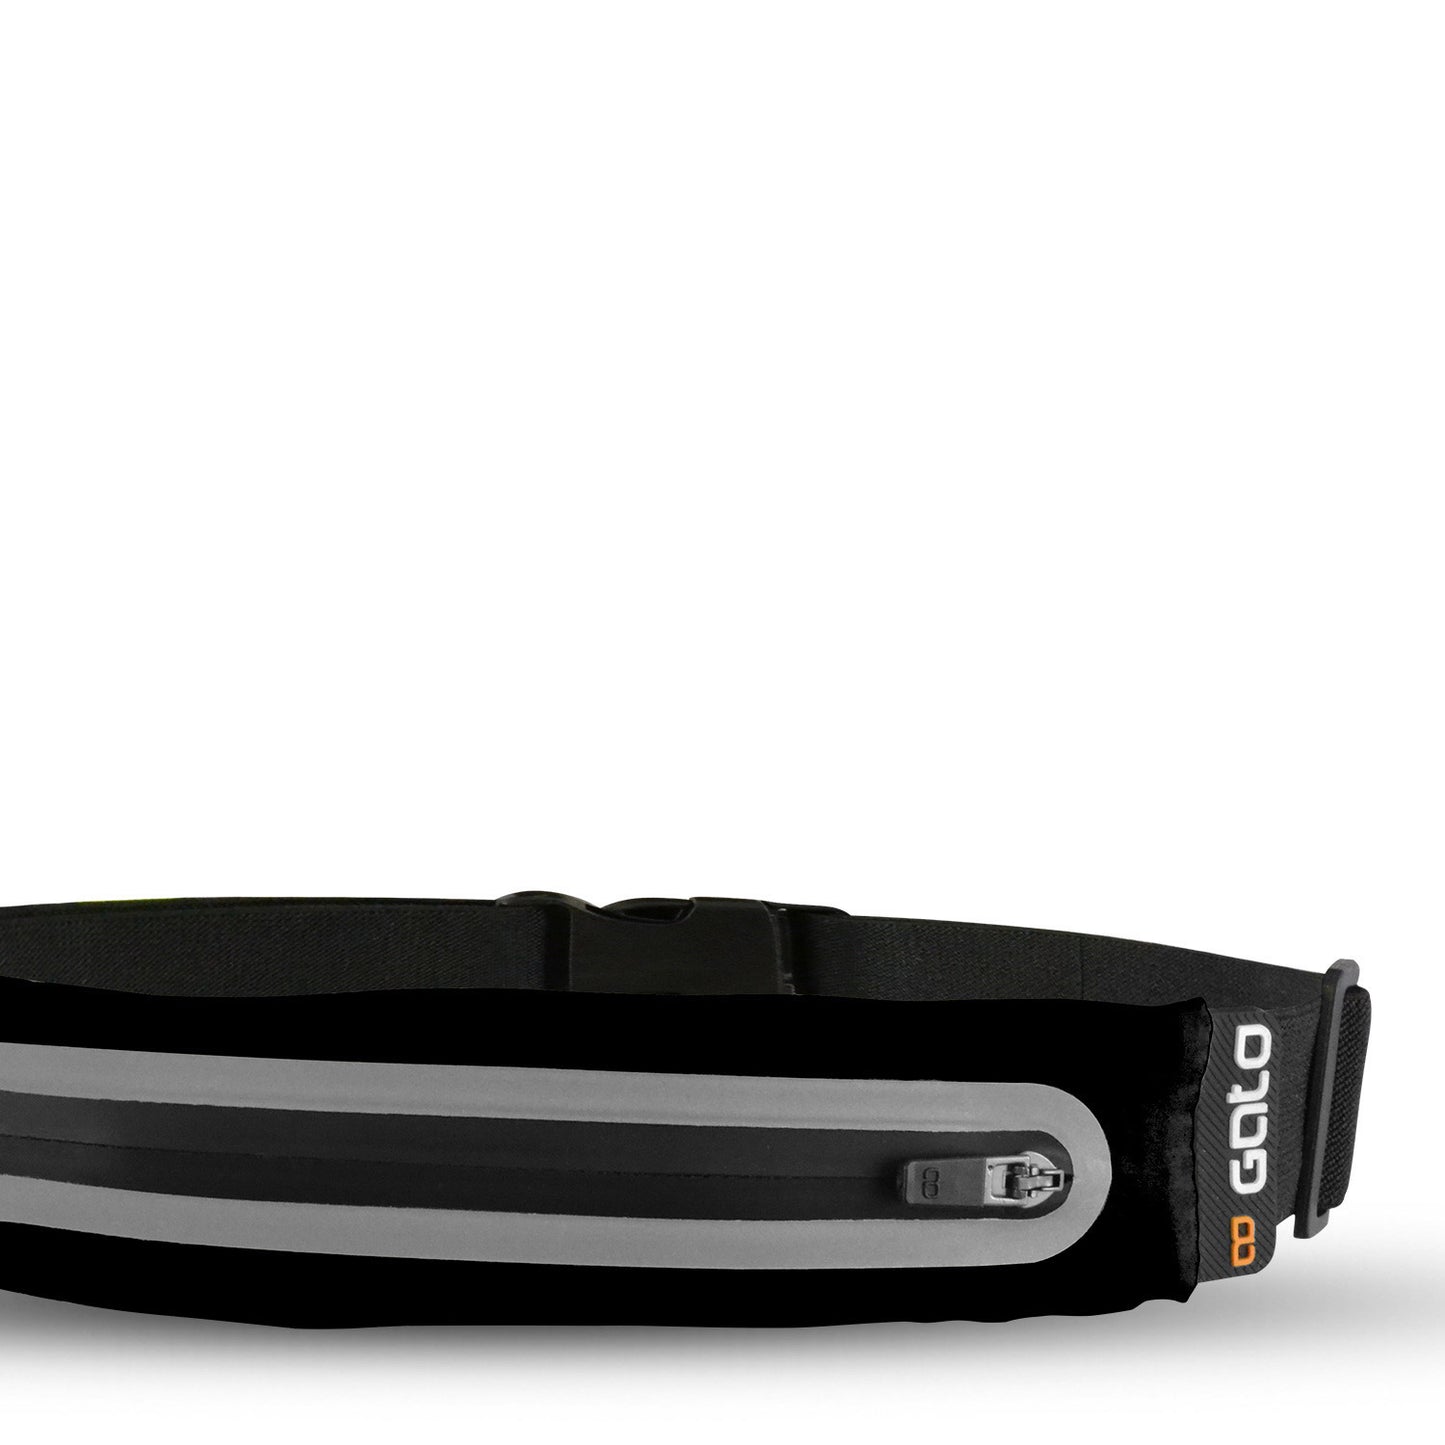 Outwet Sport belt waterproof black one size